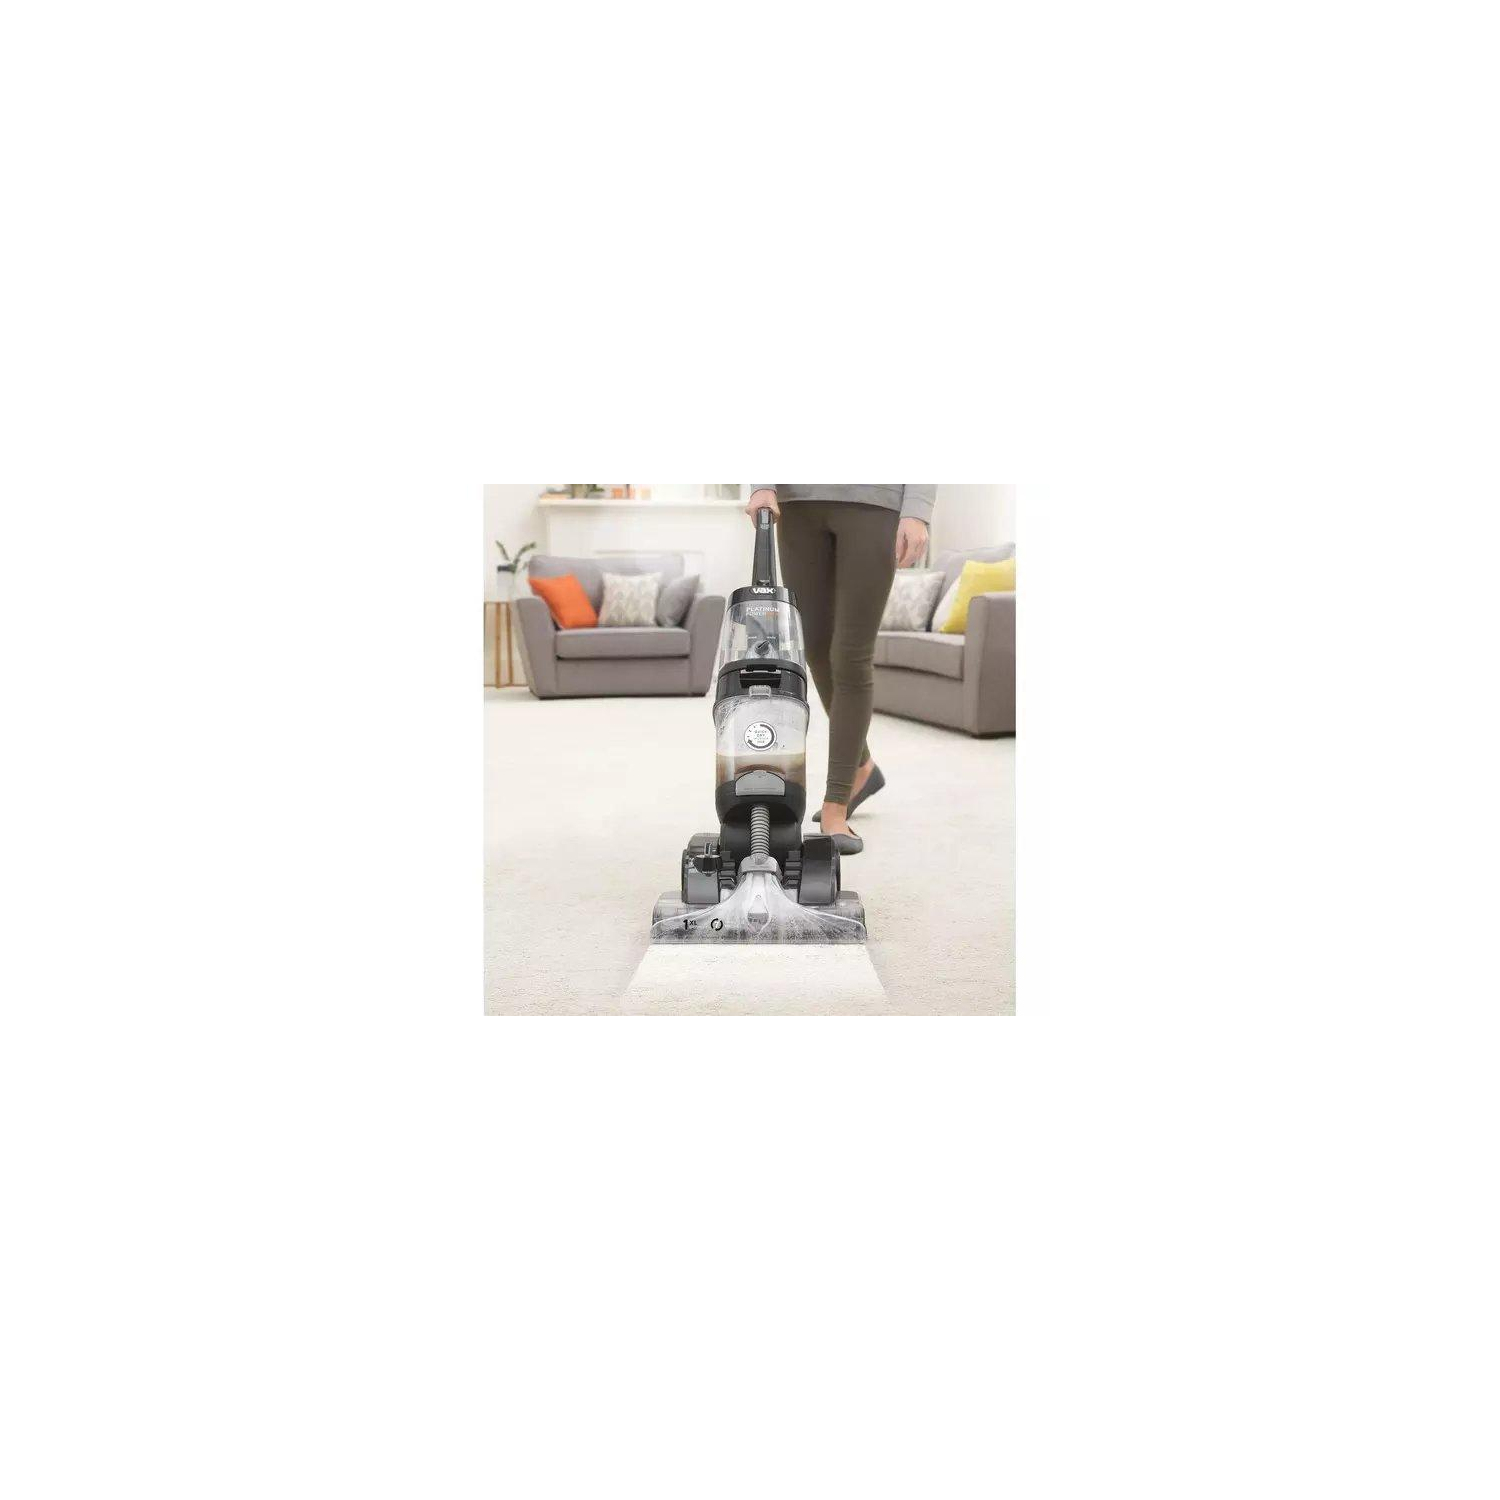 VAX ECB1SPV1 Platinum Power Max Carpet Cleaner - Black - 1